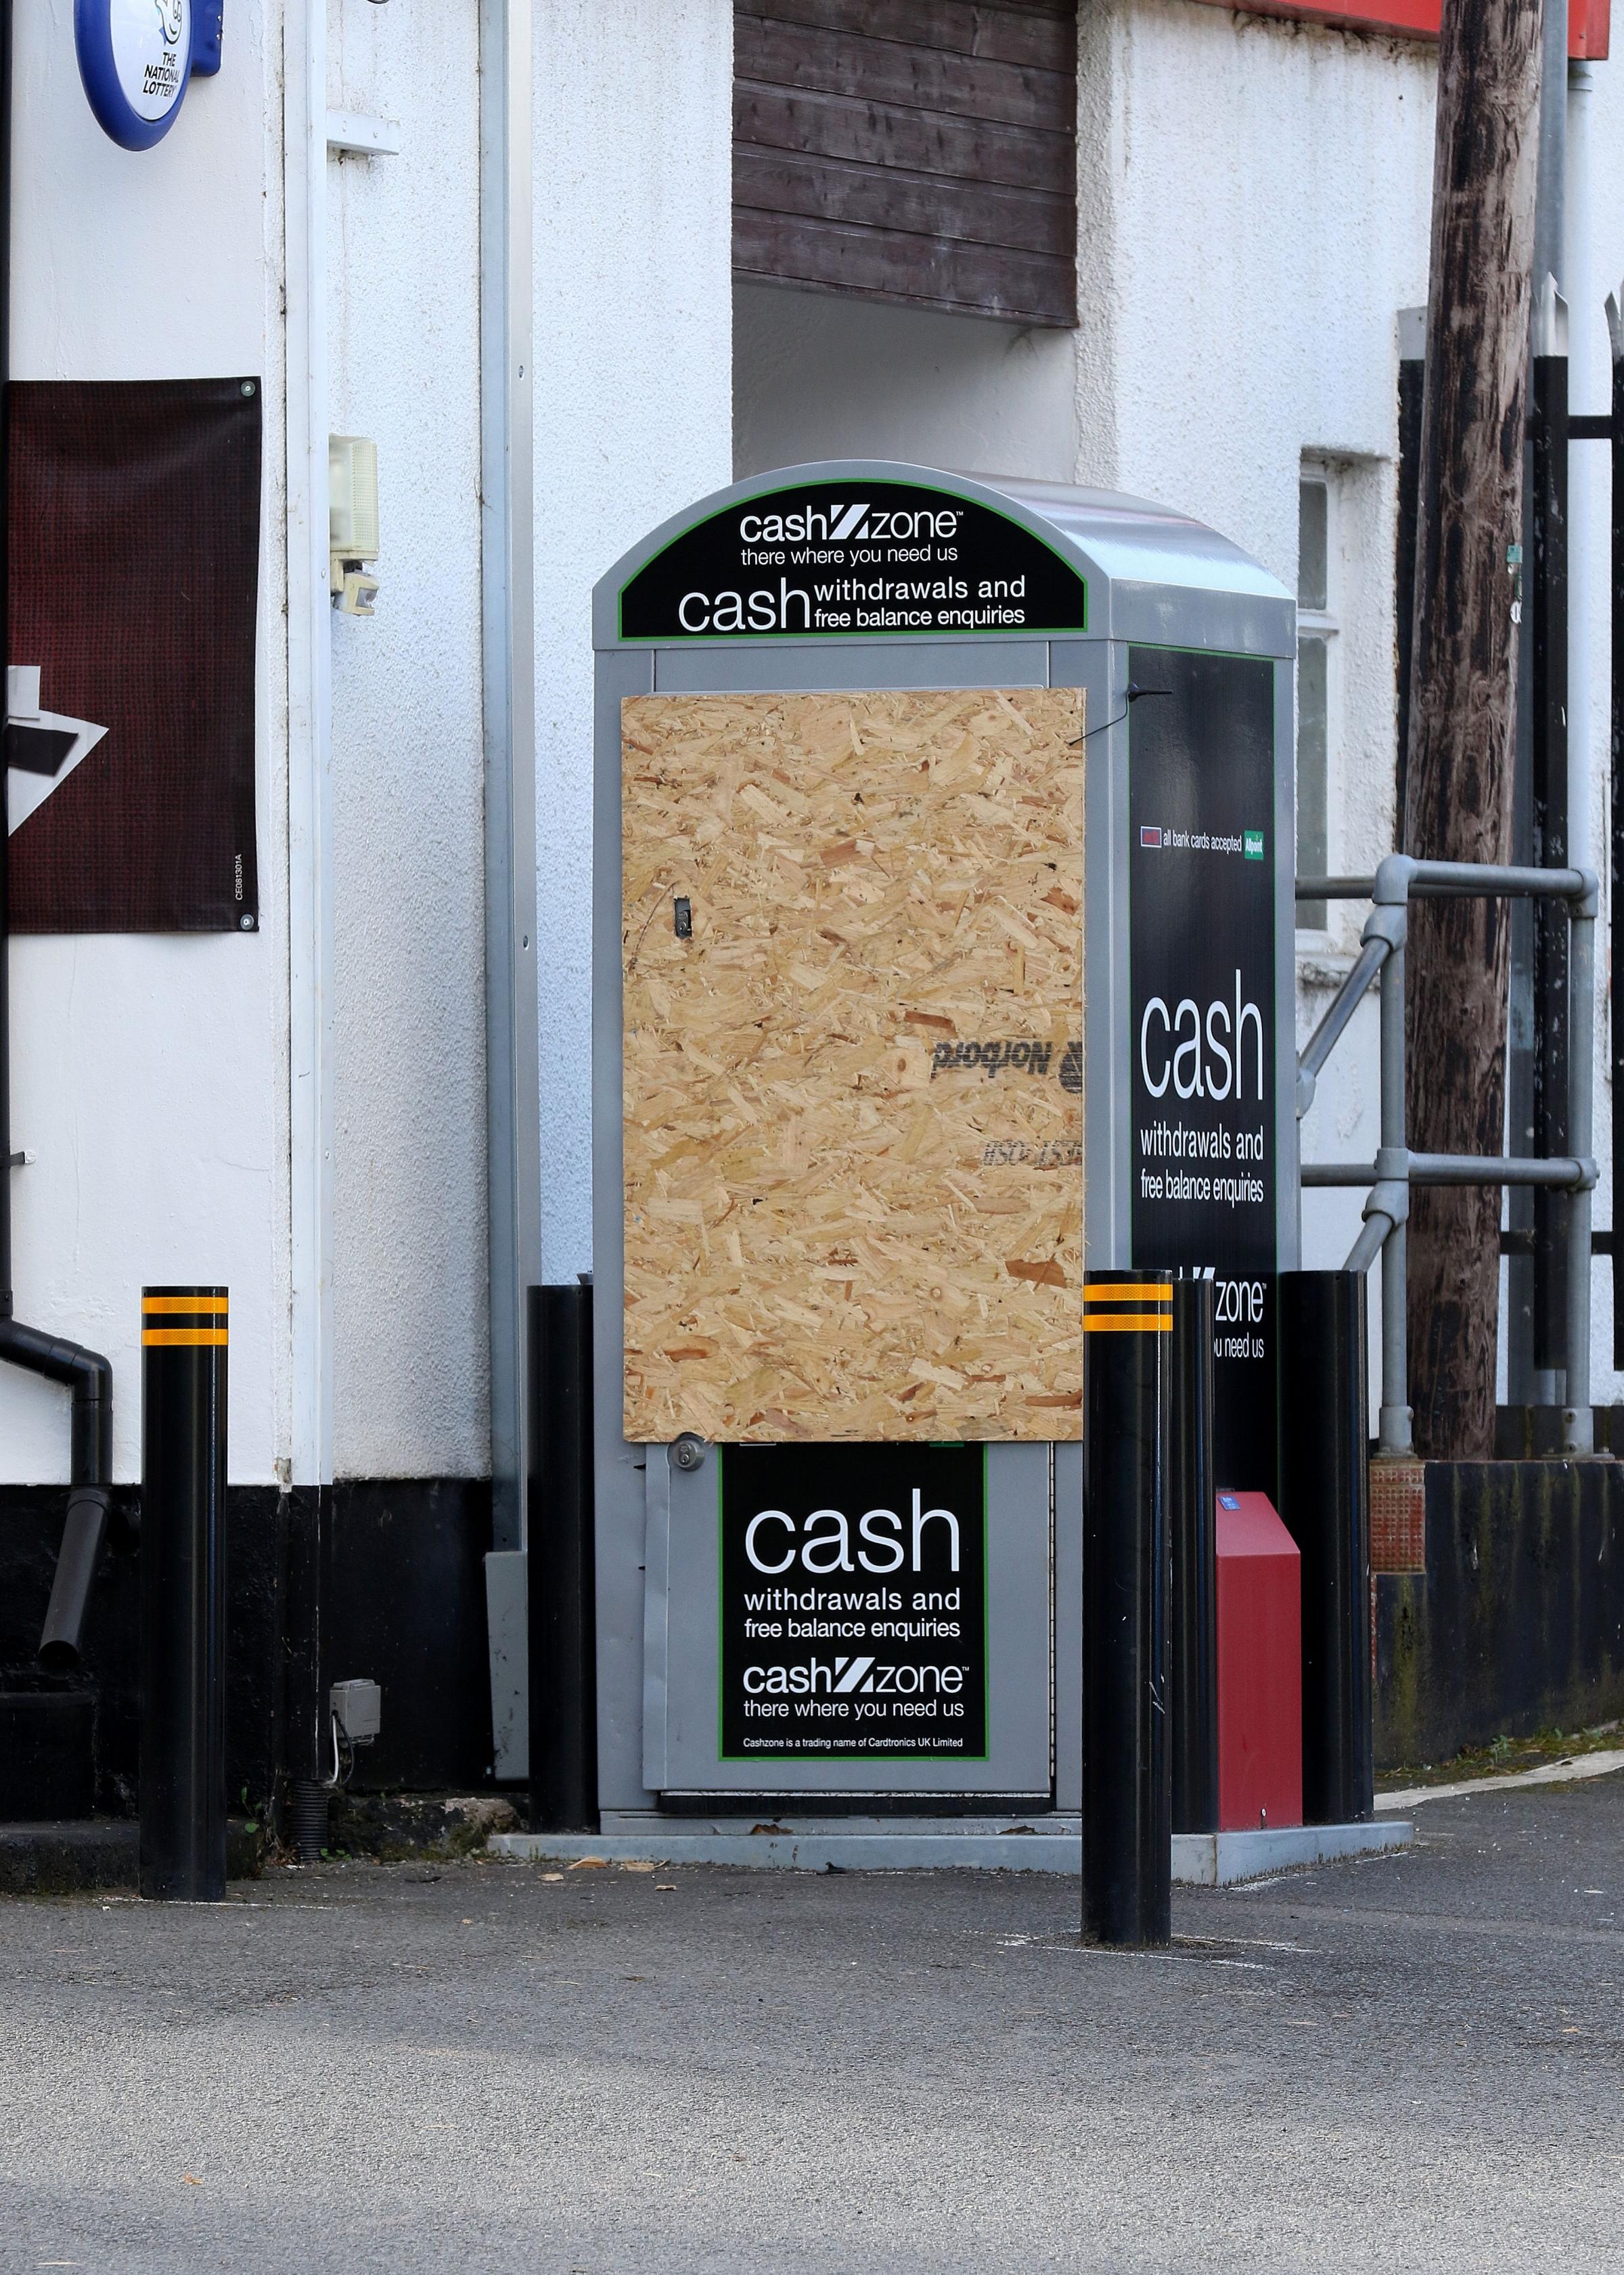 Police still investigating Ledbury ATM attacks